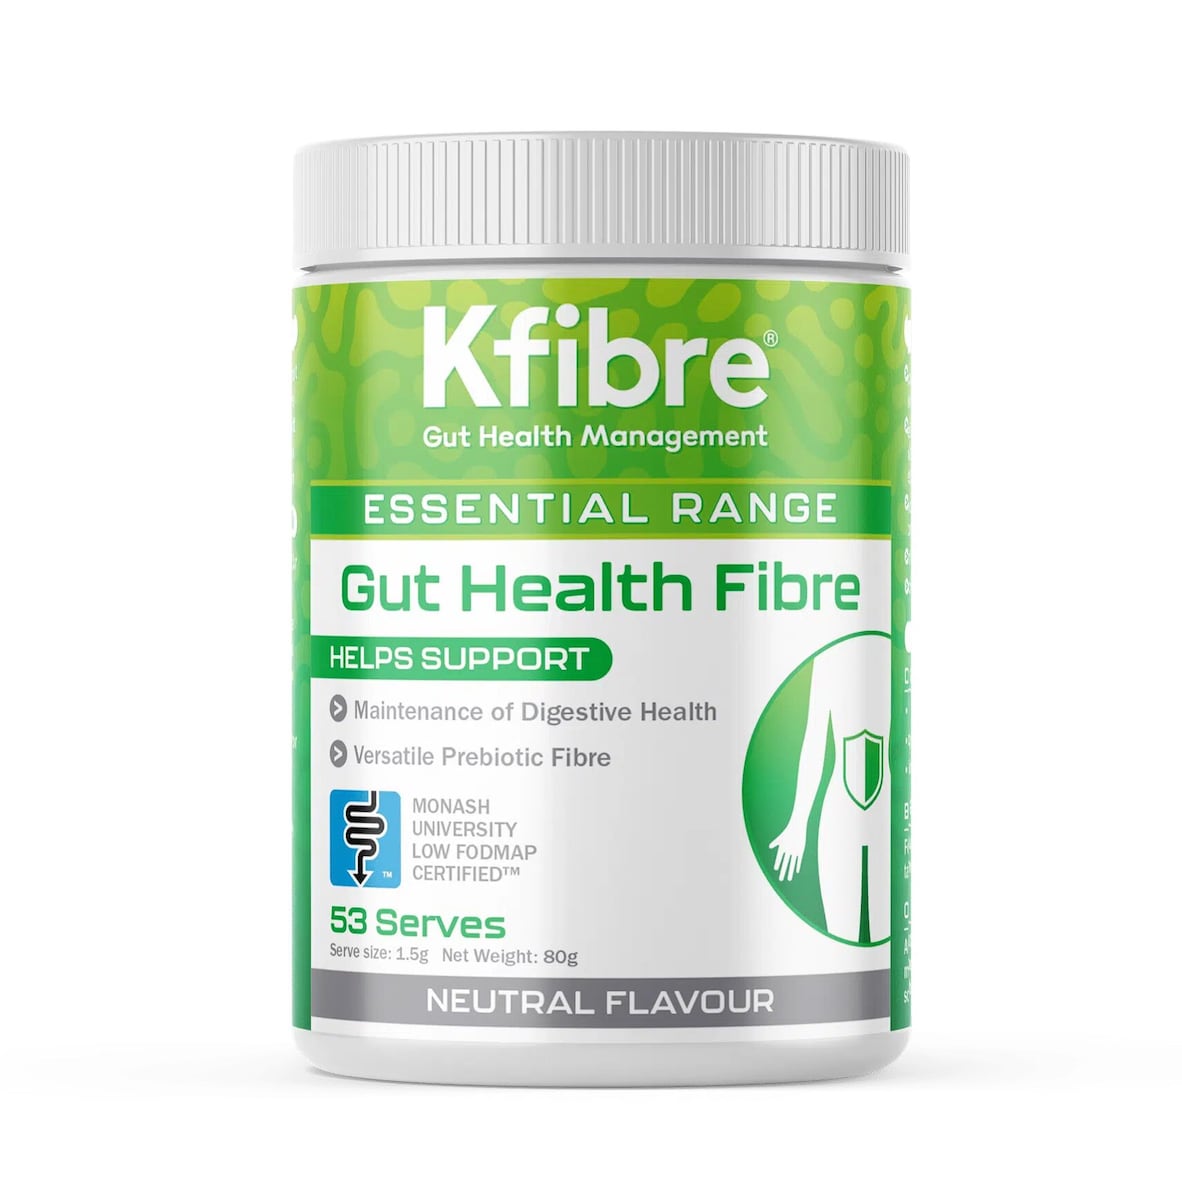 Kfibre Essential Gut Health Fibre Original Tub 80g